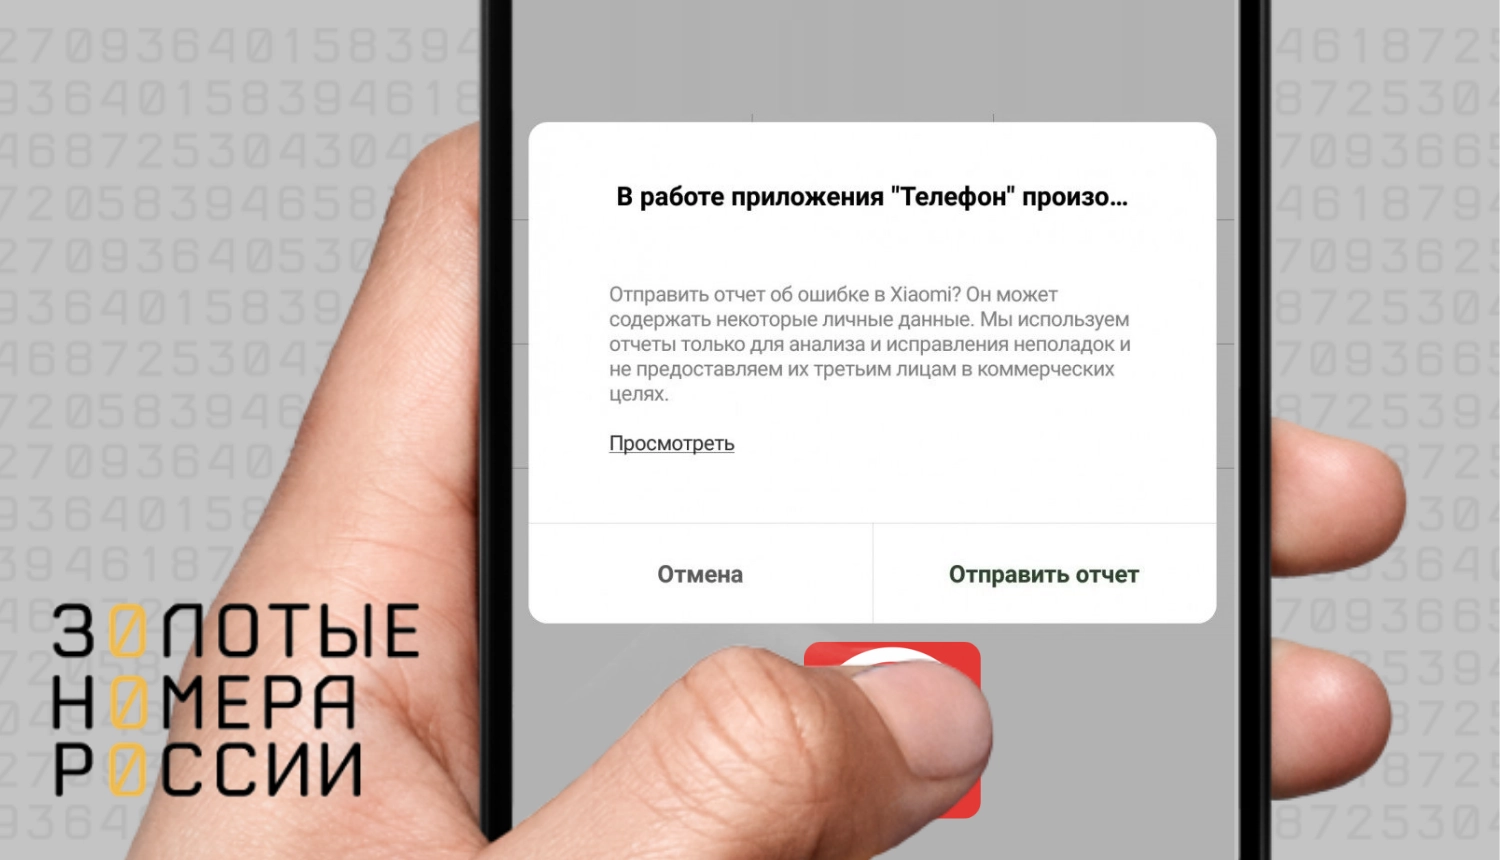 Ошибка com.android.phone на Android — как исправить